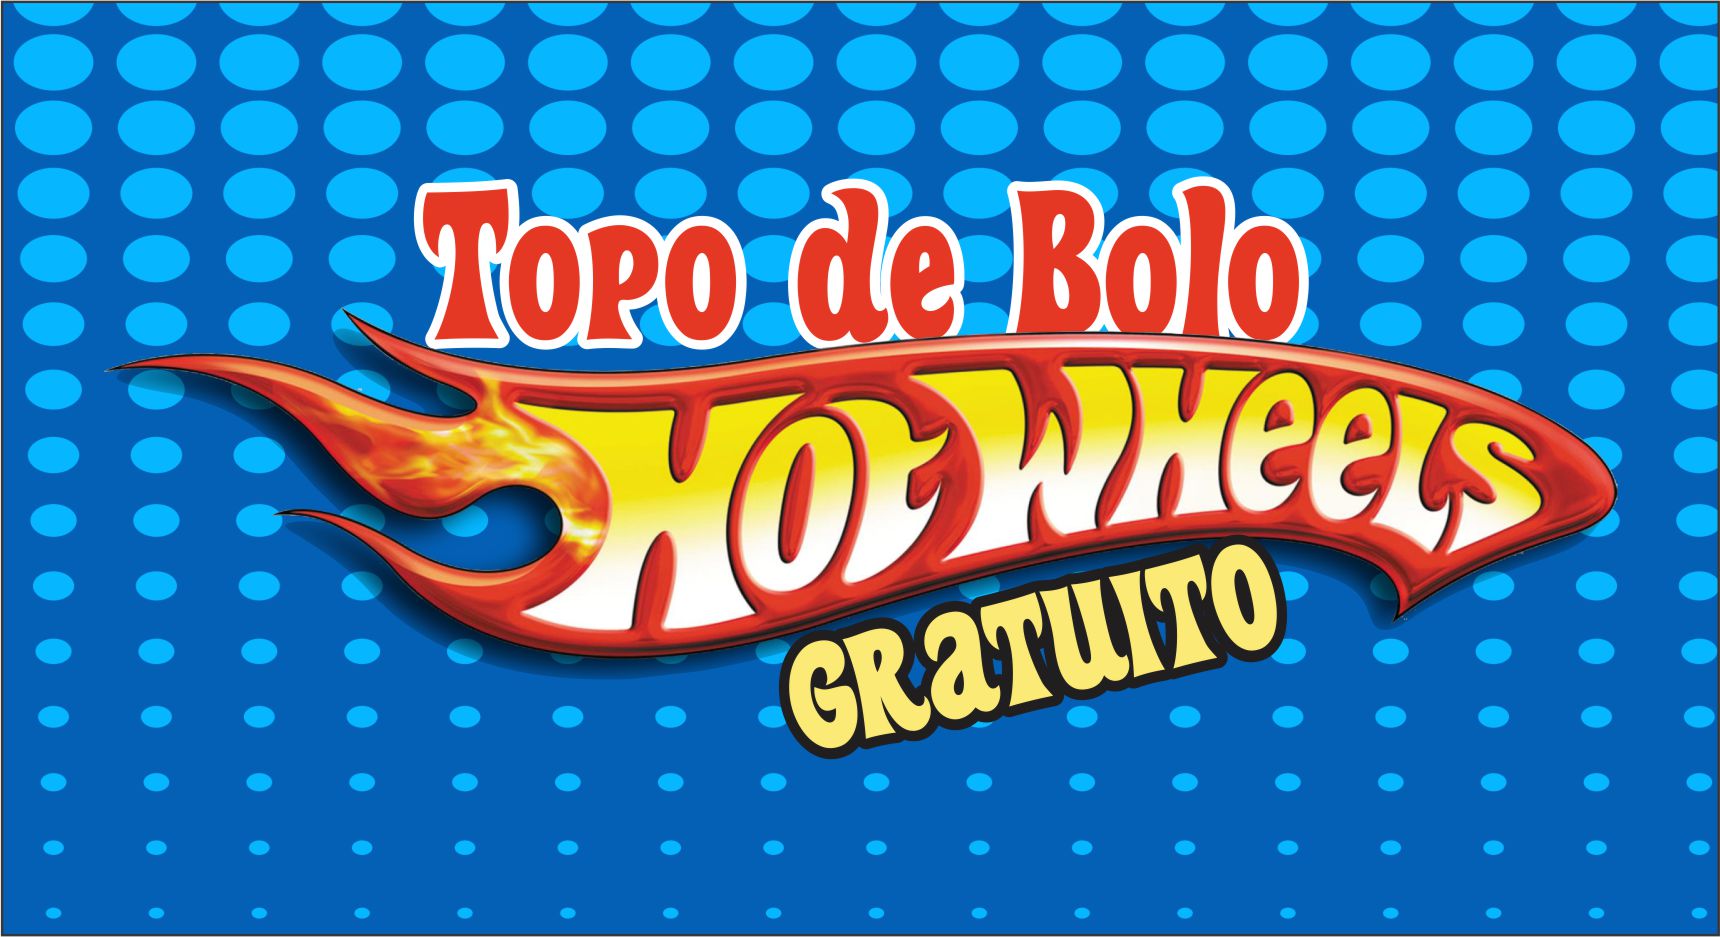 Topo de Bolo hot wheels - Edite grátis com nosso editor online